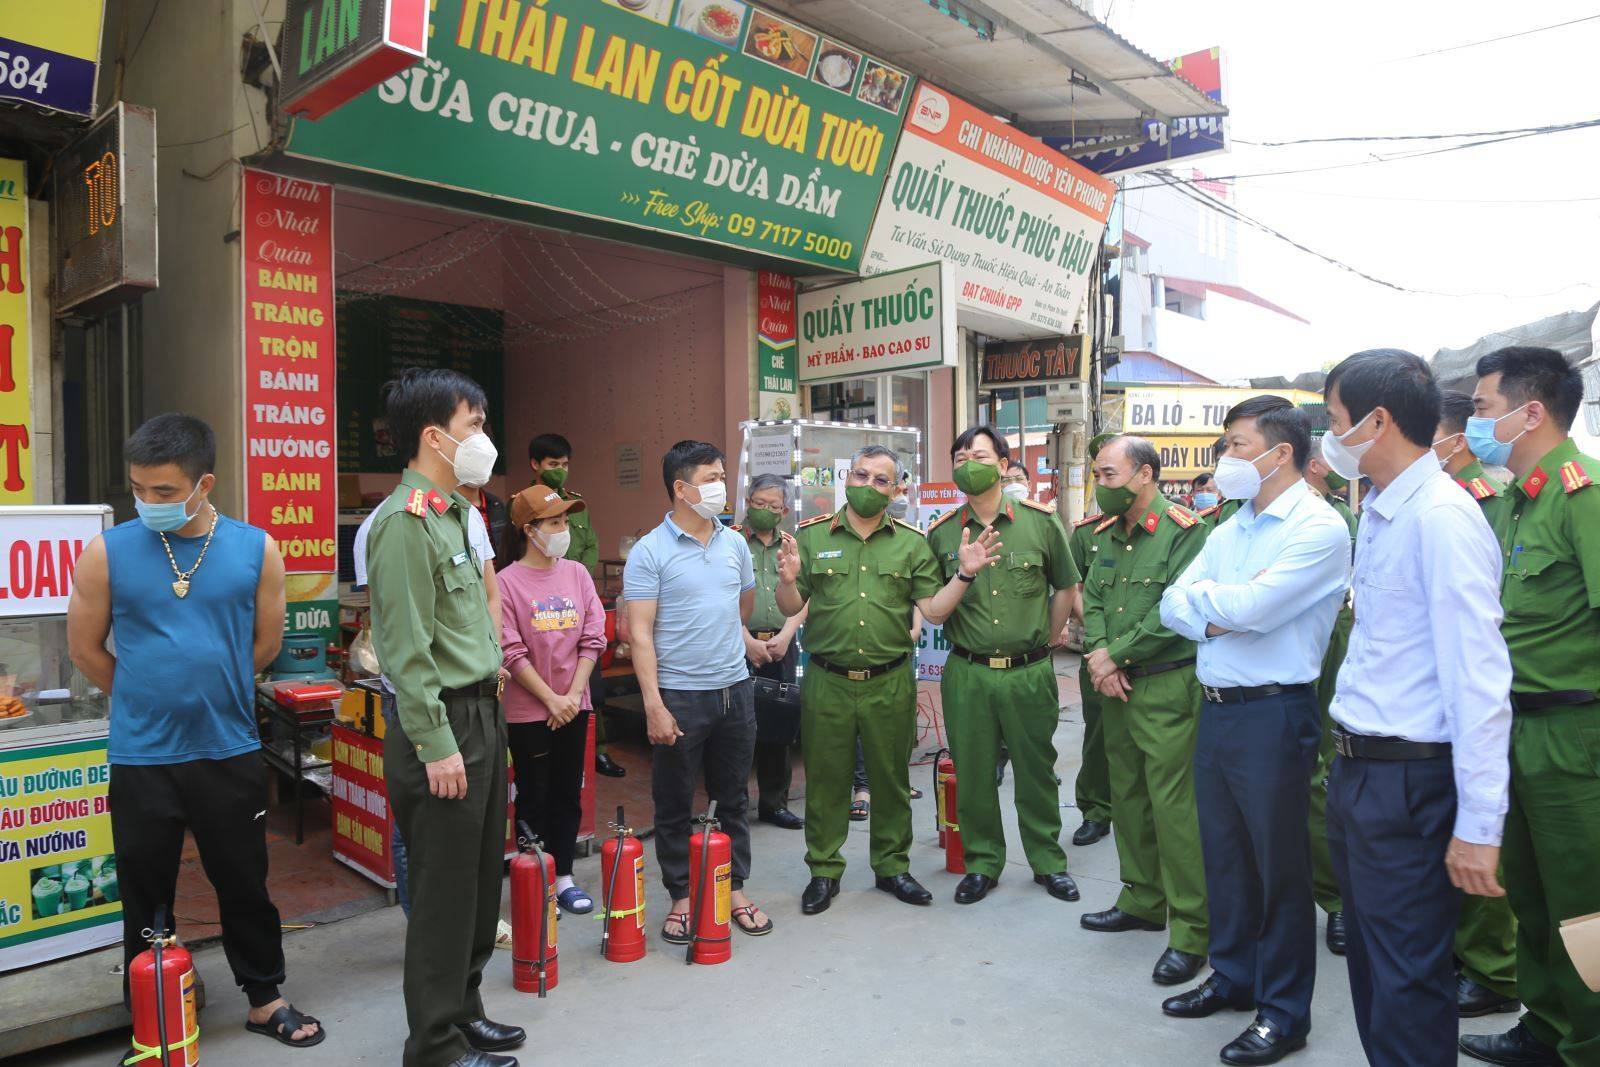 PCCC tỉnh Bắc Ninh: Các đồng chí lãnh đạo Bộ Công an và lãnh đạo tỉnh kiểm tra công tác bảo đảm an toàn PCCC một cơ sở kinh doanh